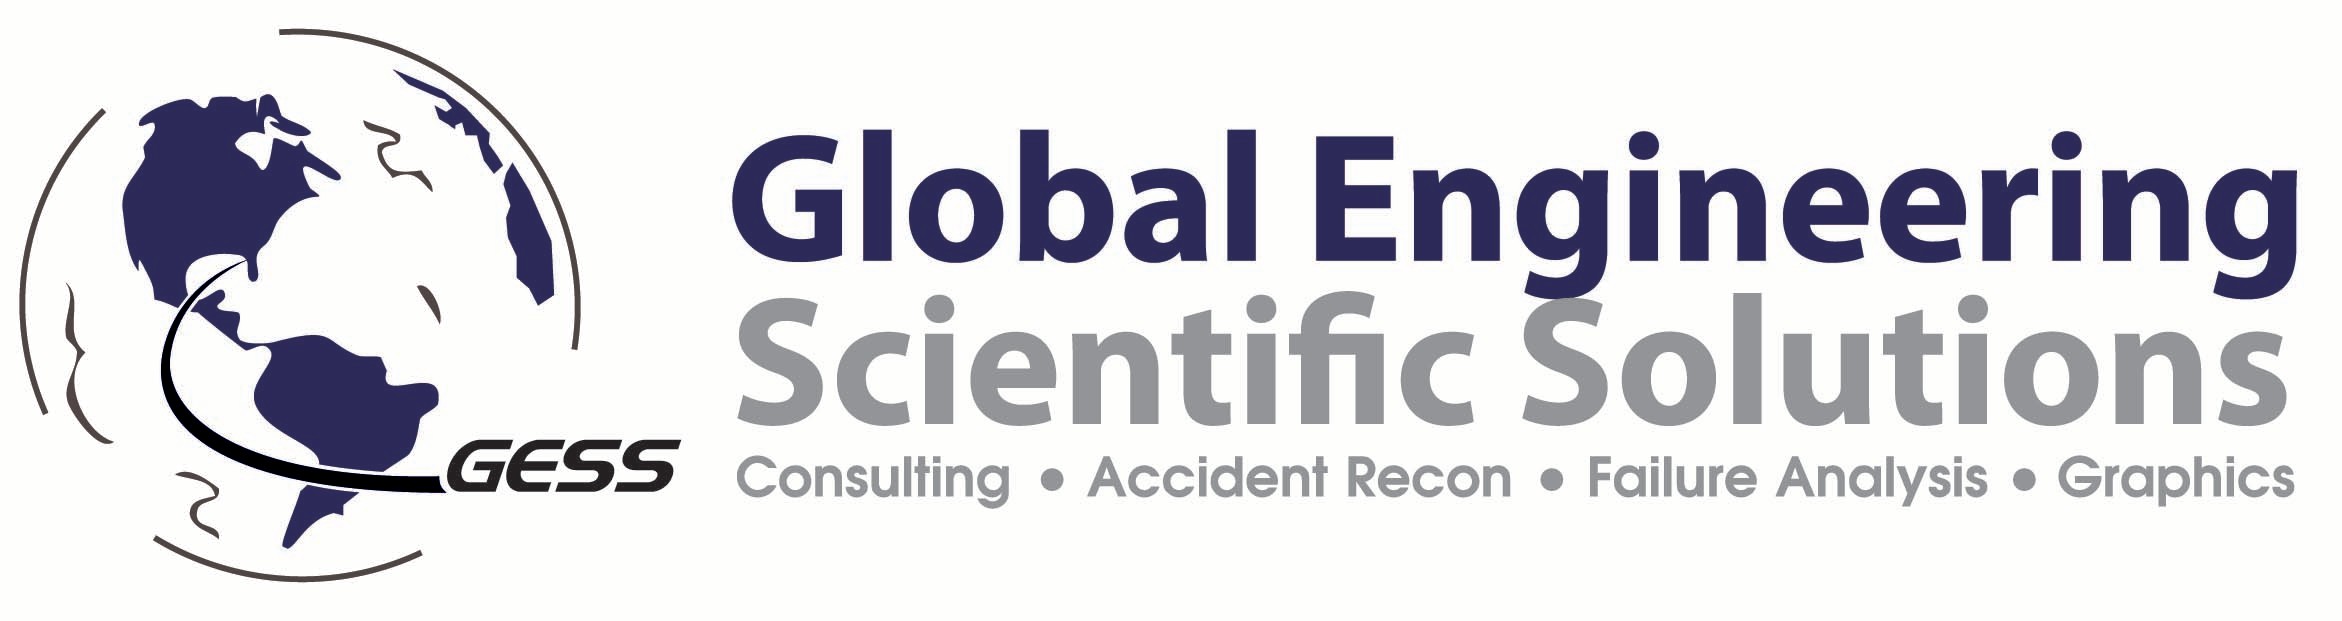 Global Engineering & Scientific Solutions